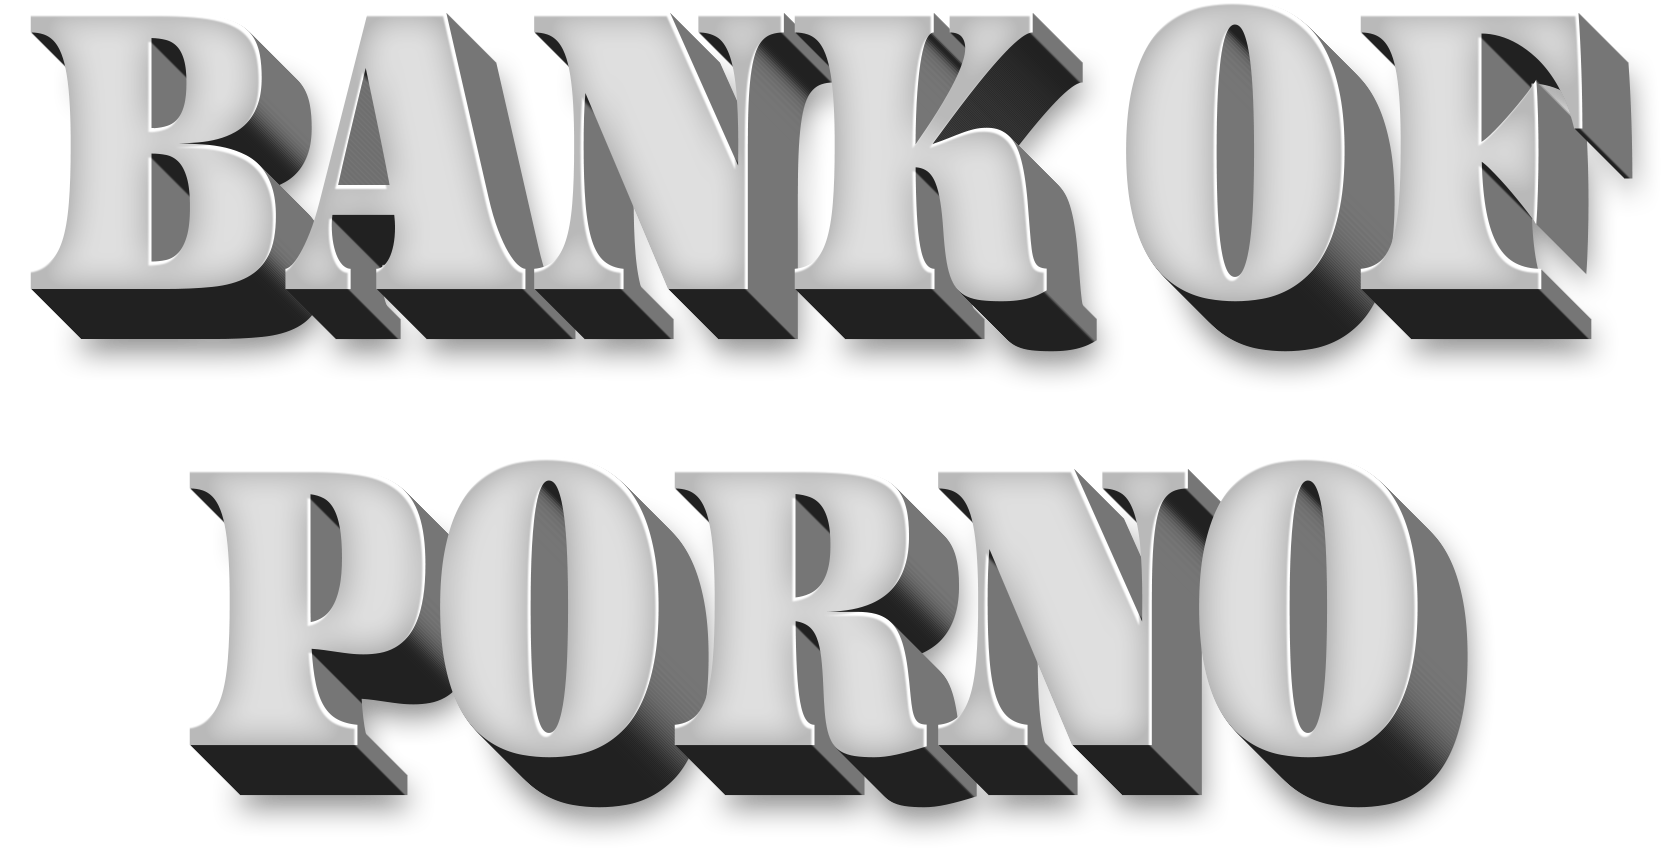 Bank of Porno